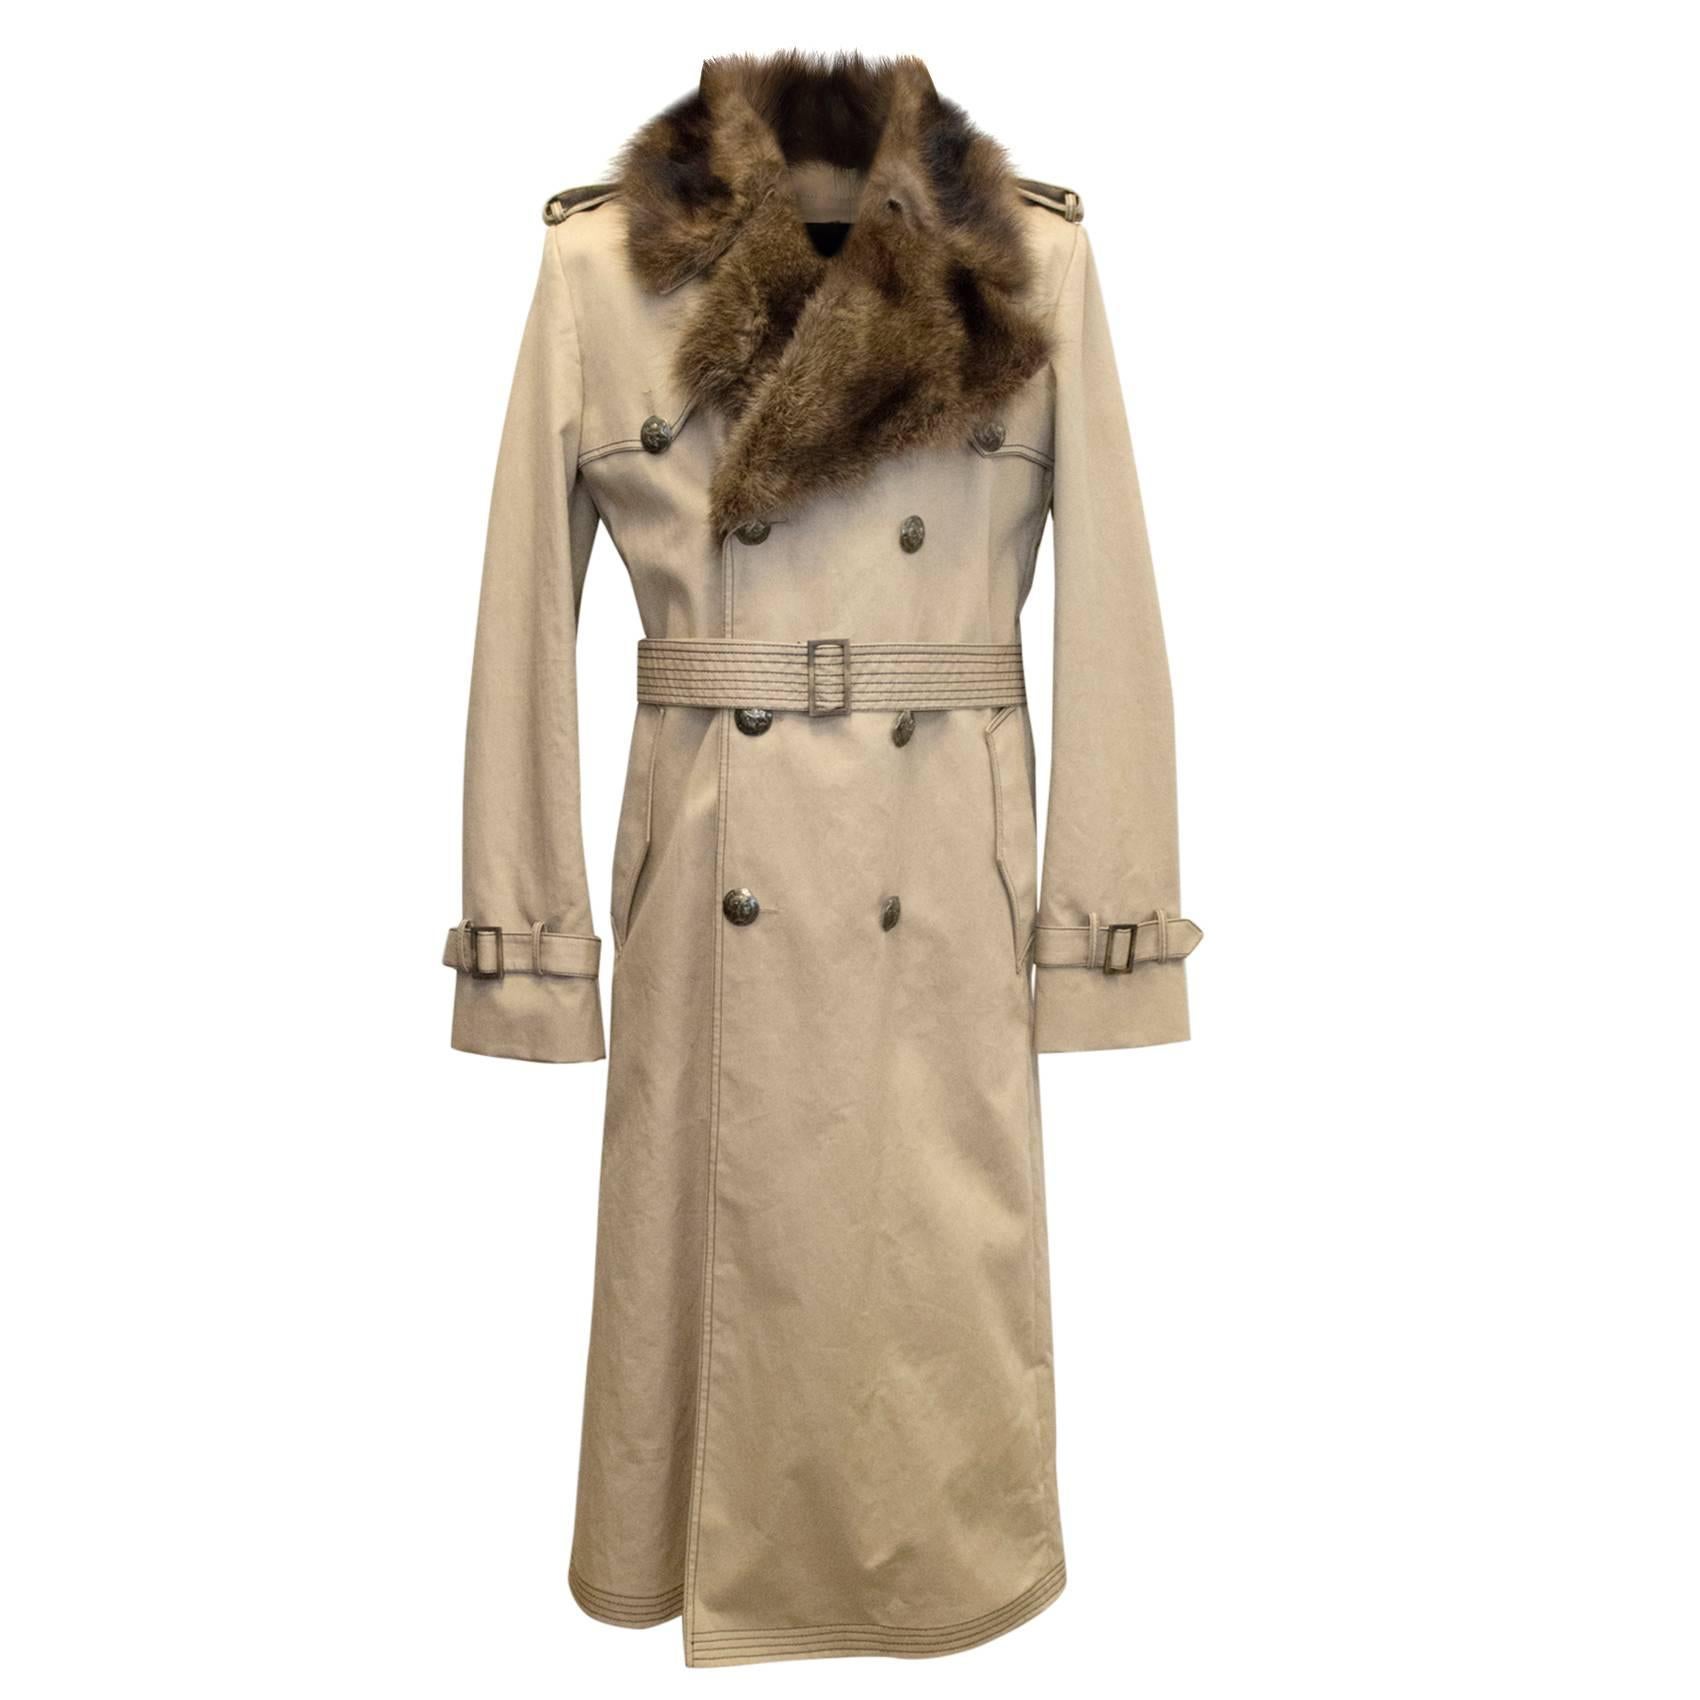  Fendi Men's detachable fur lined trench coat For Sale